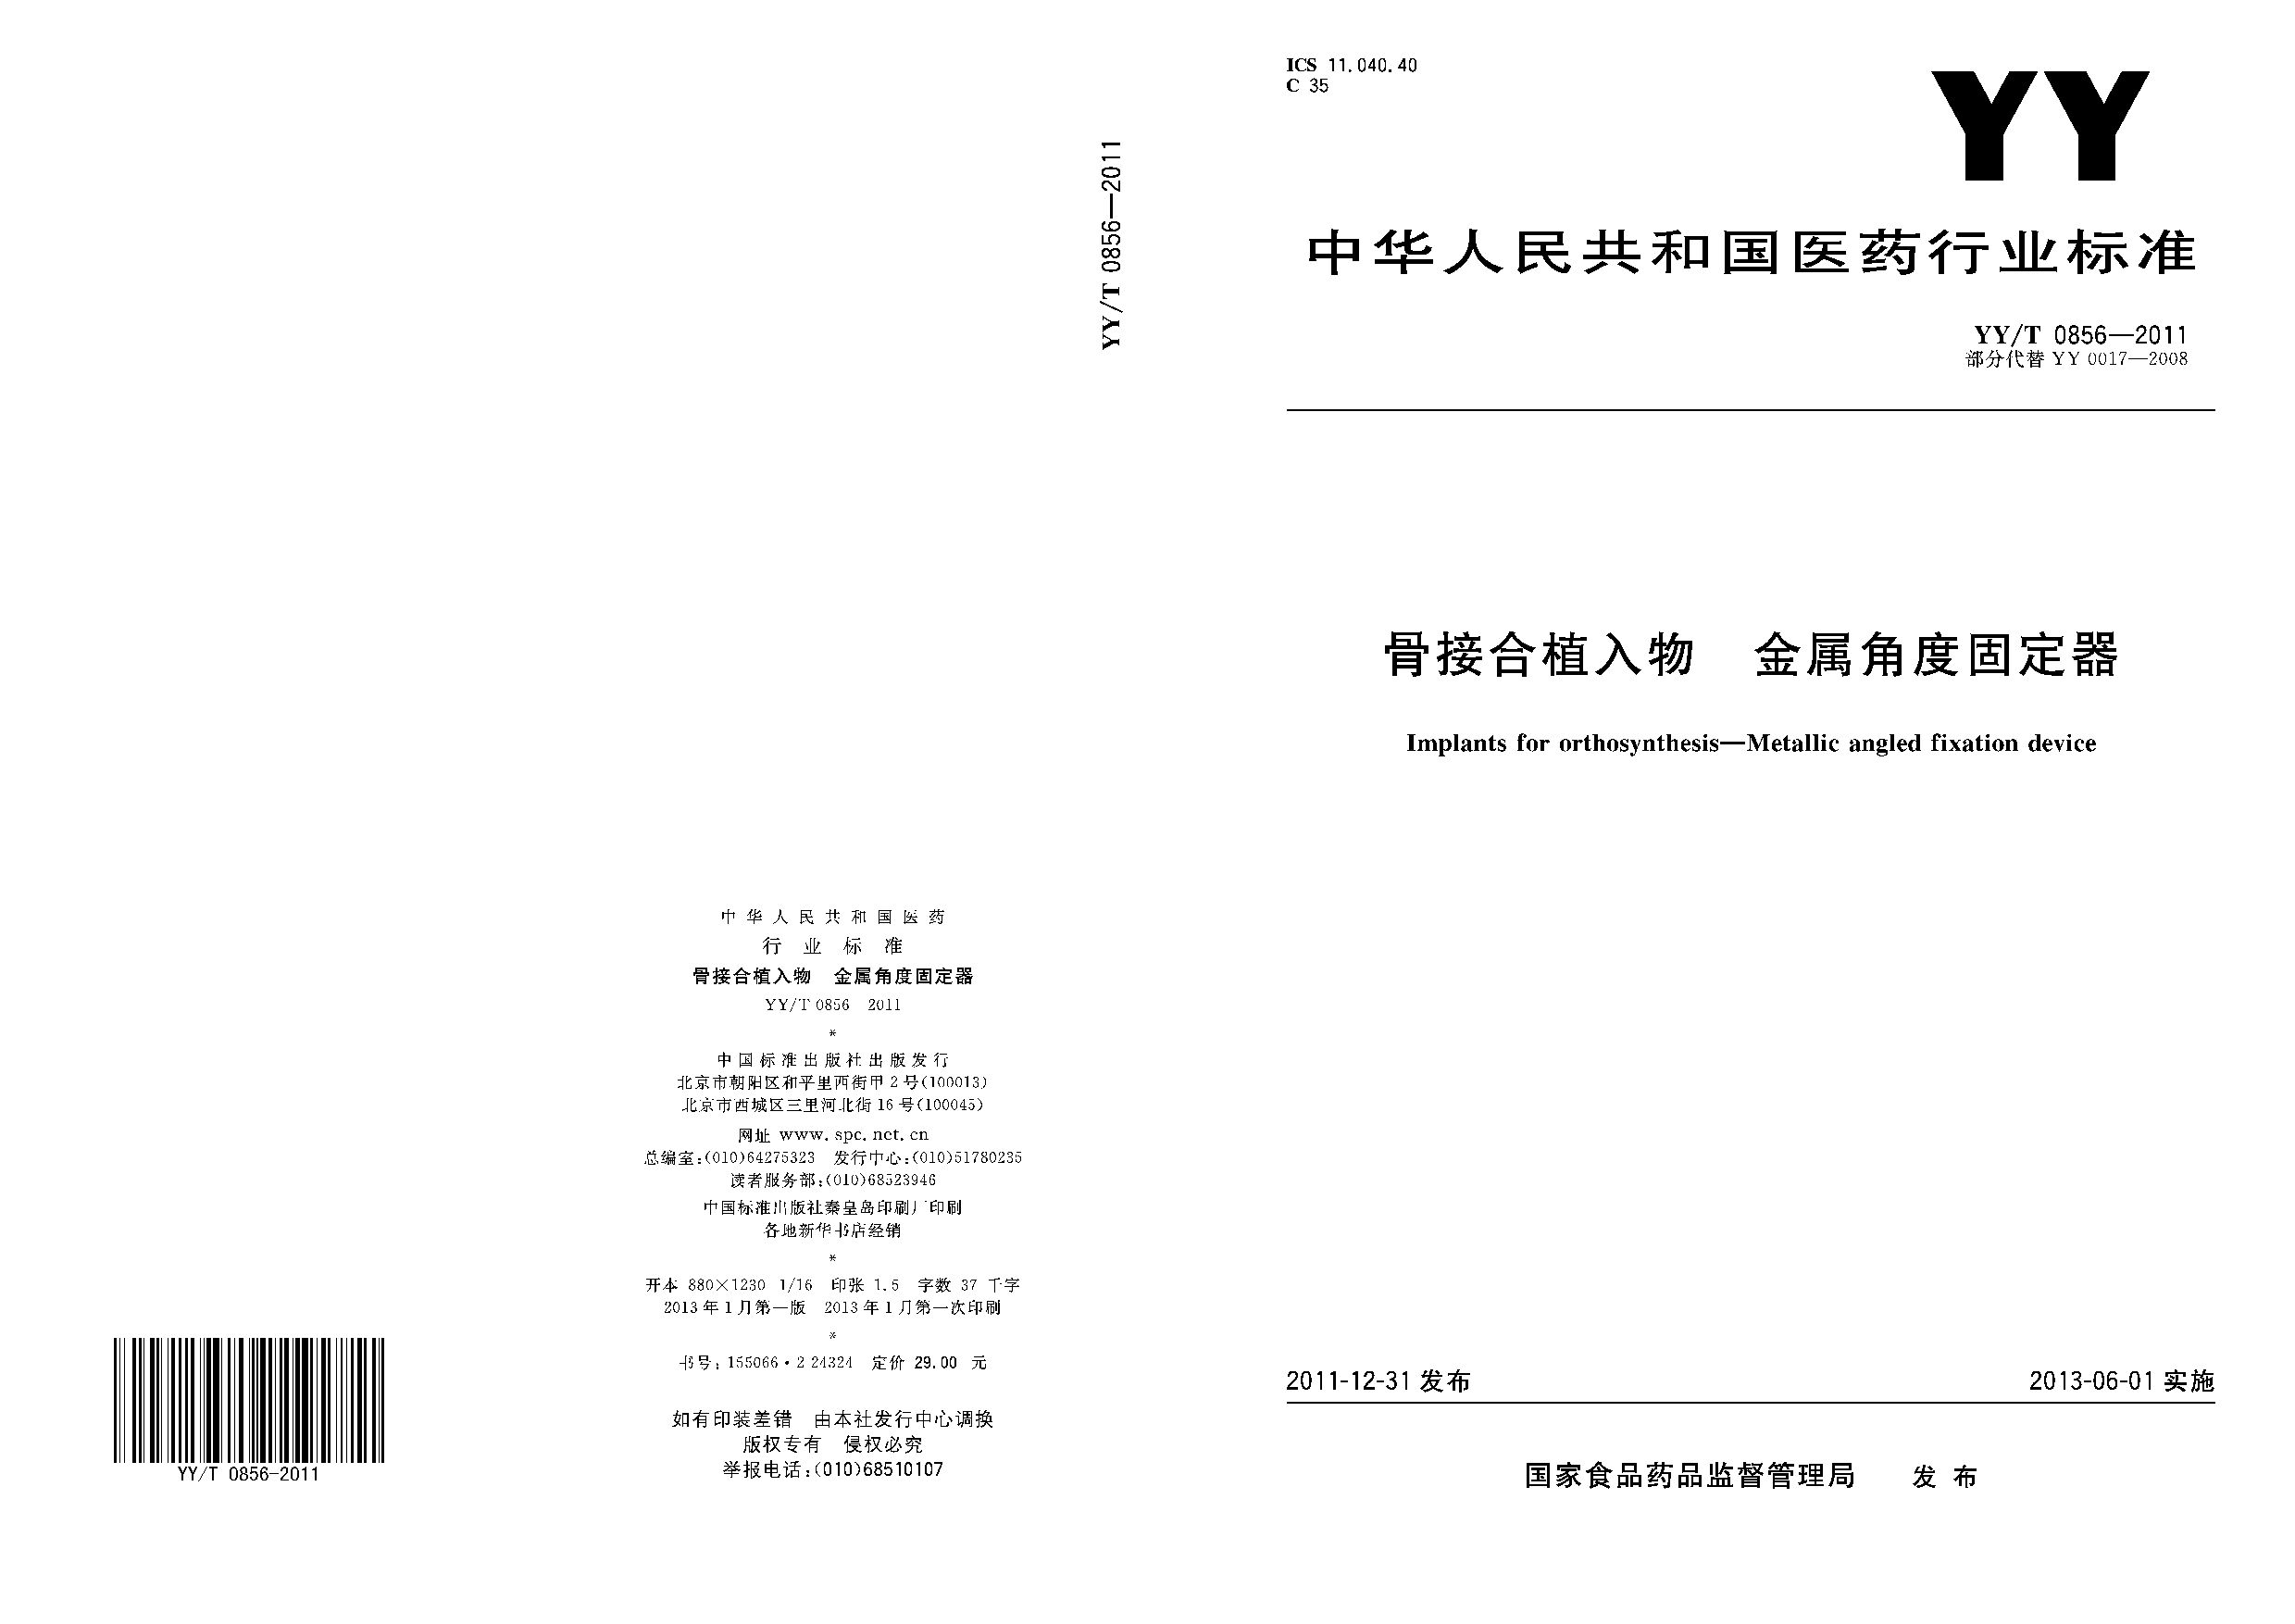 YY/T 0856-2011封面图